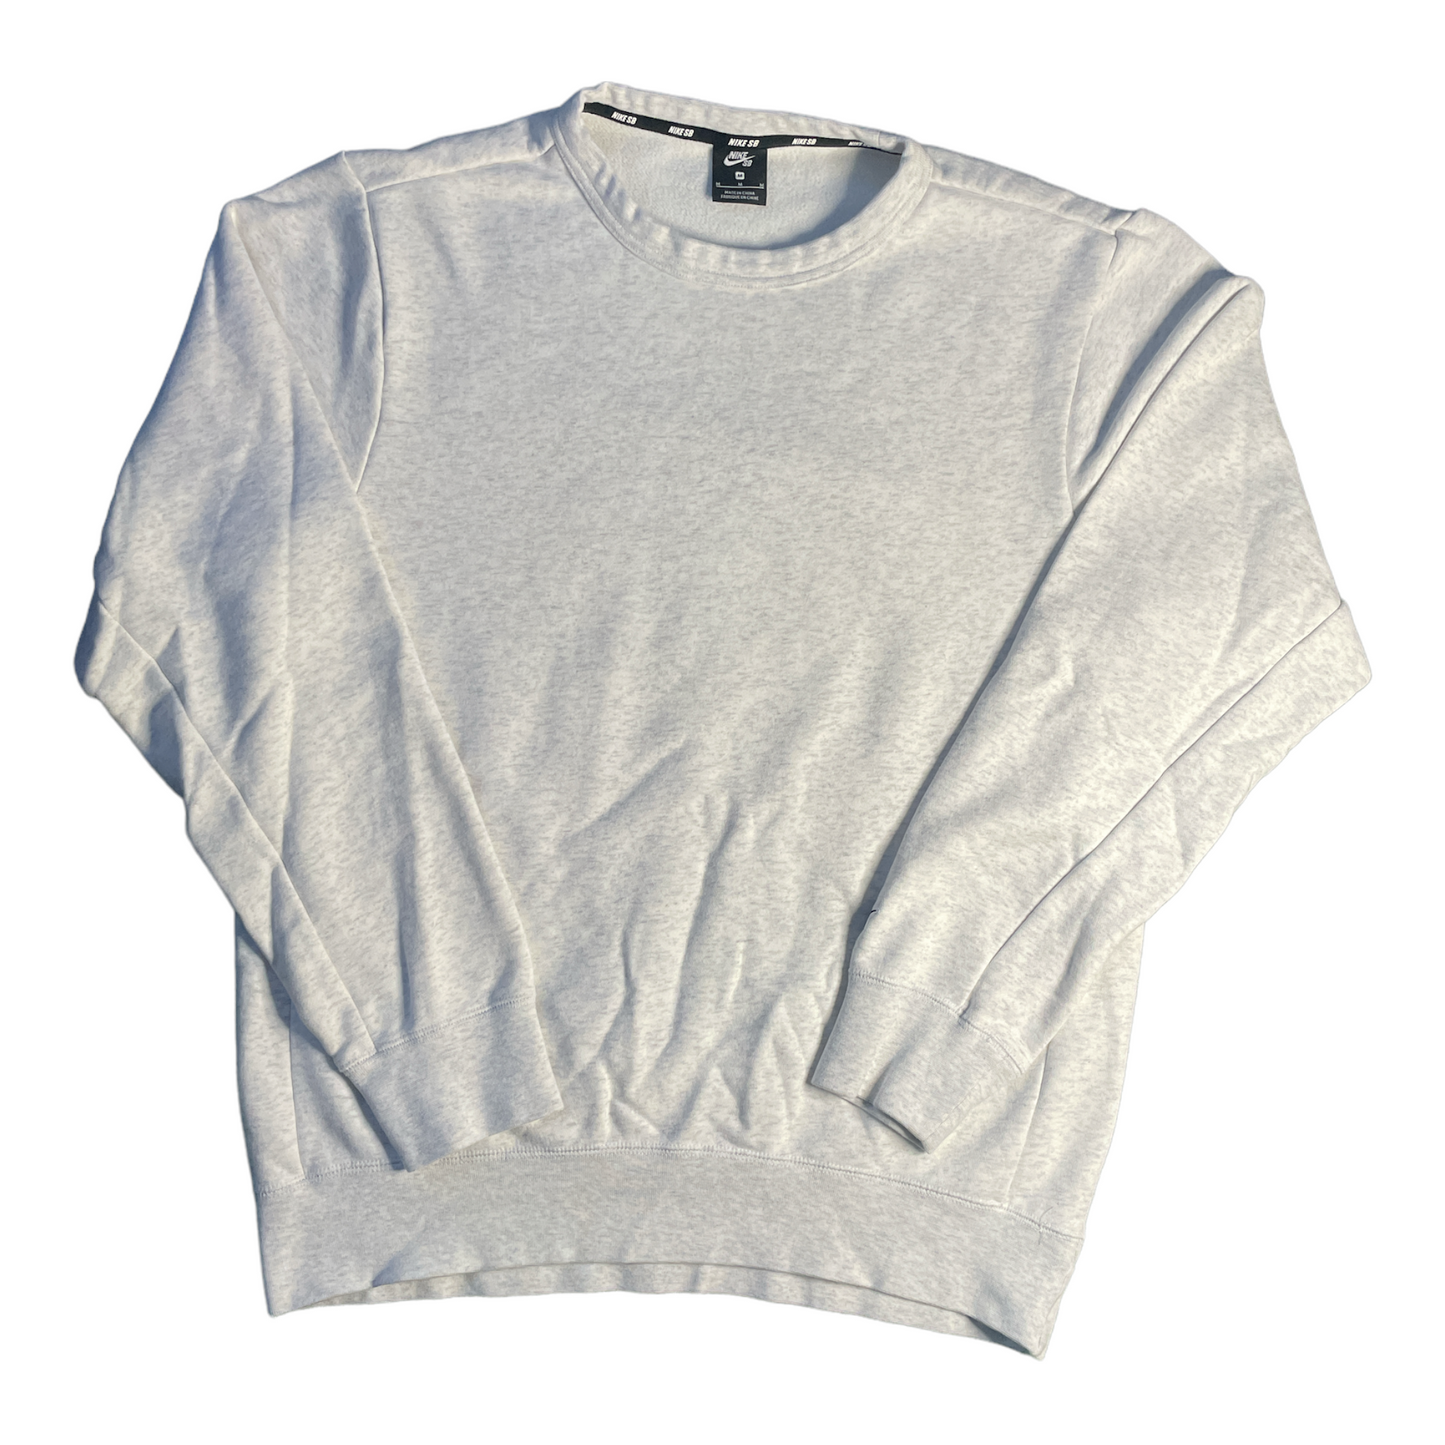 Gray Nike SB Sweater M